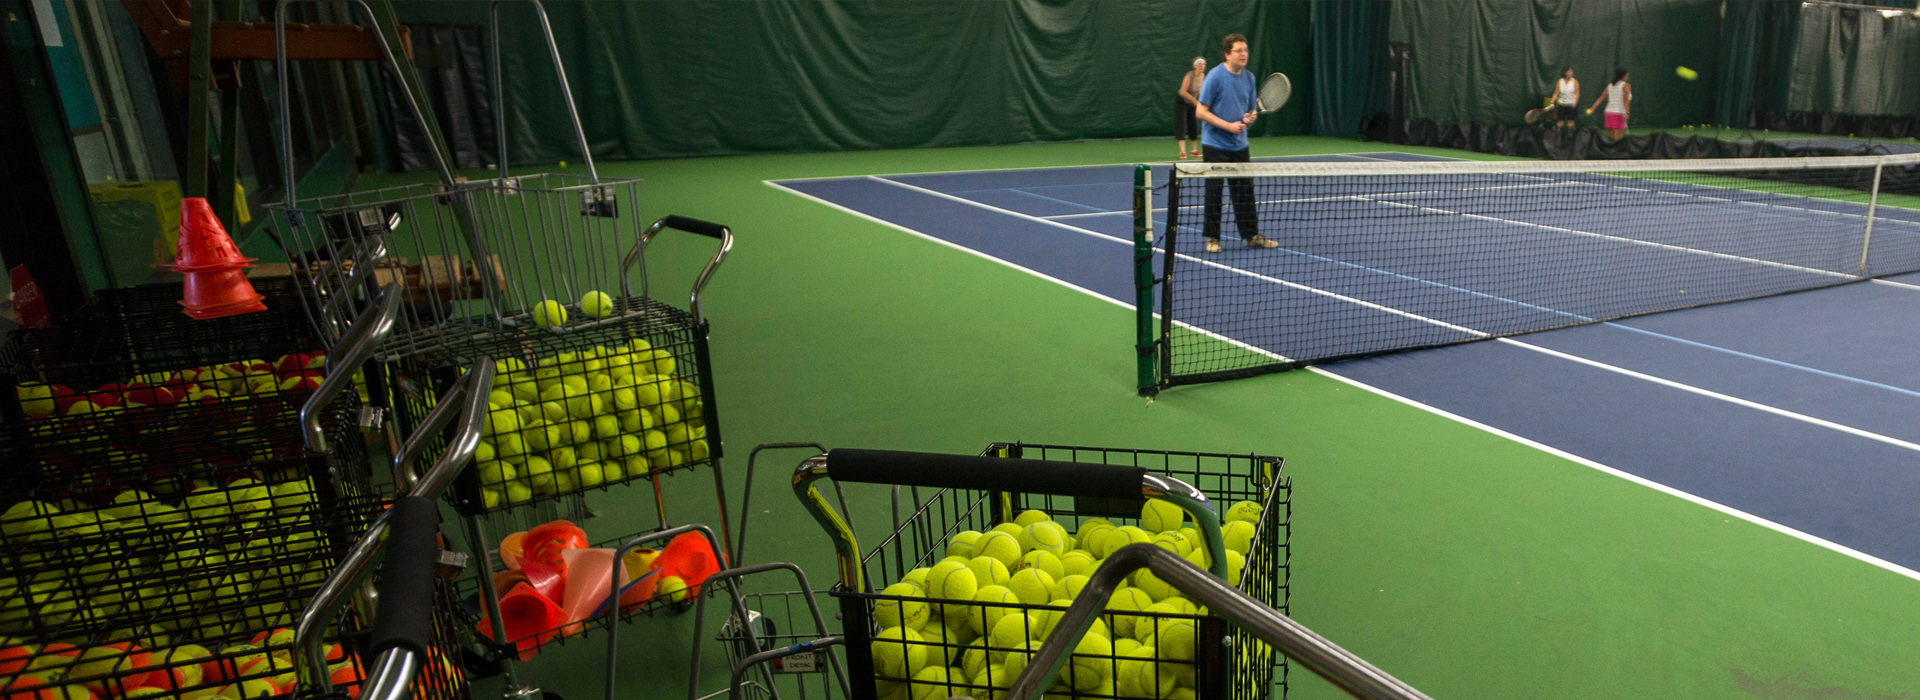 Reserve an Indoor or Outdoor Tennis Court